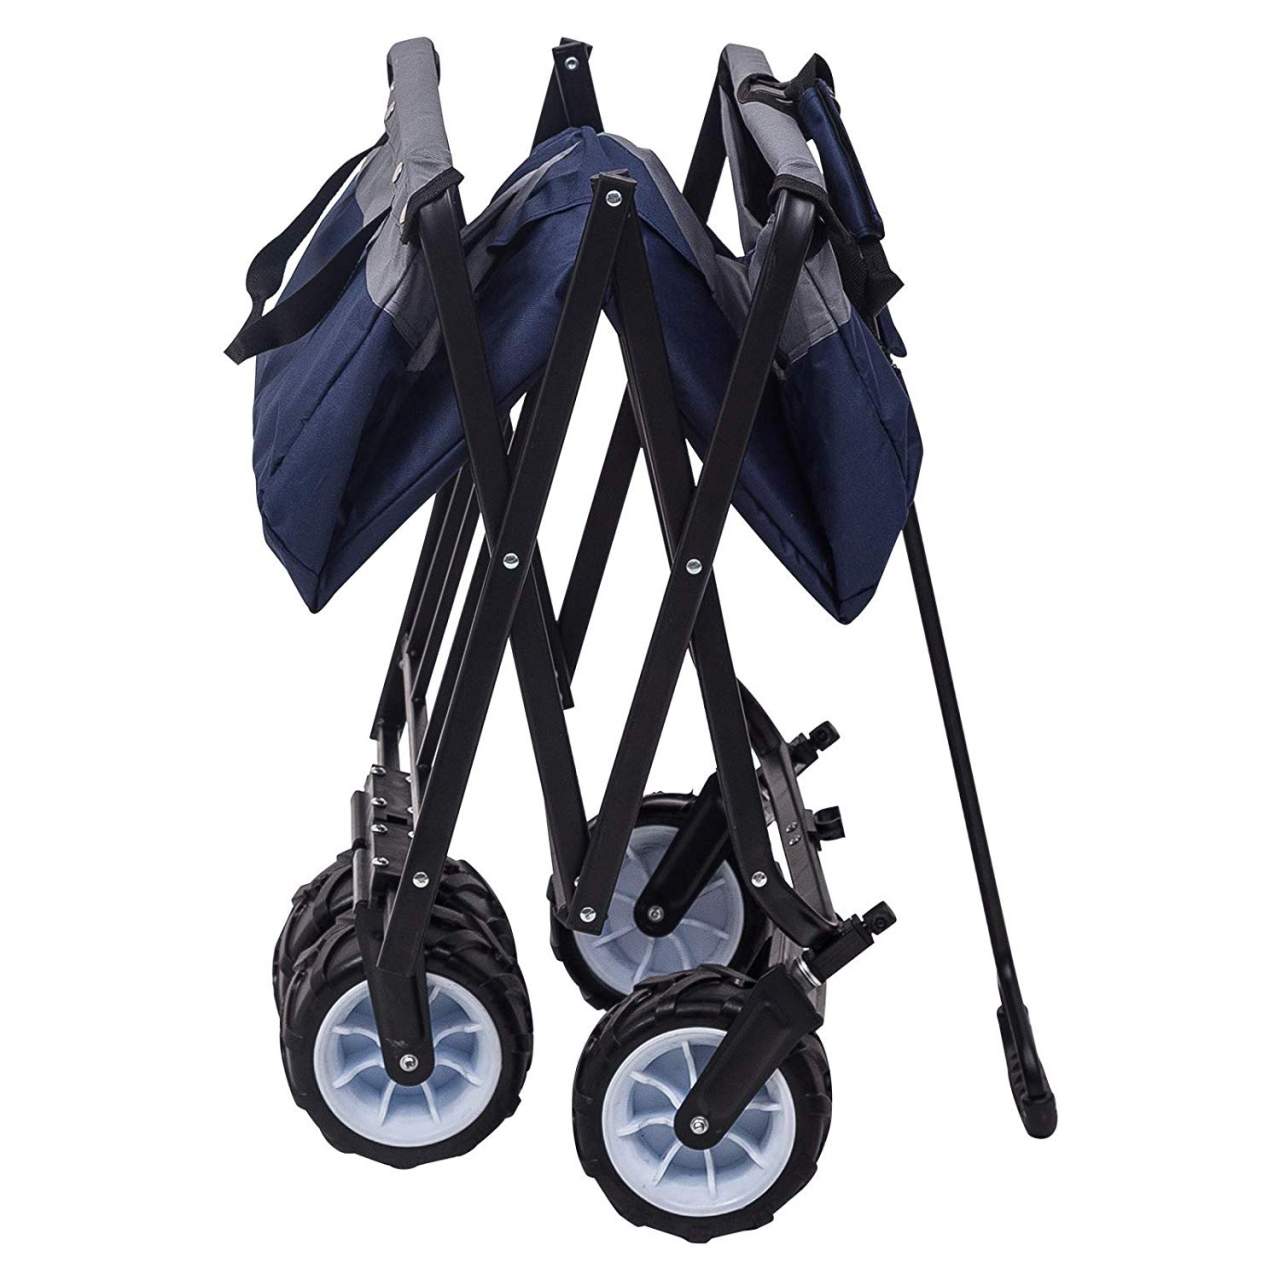 Garden Cart With 4 Wheels Portable Woltu Eu